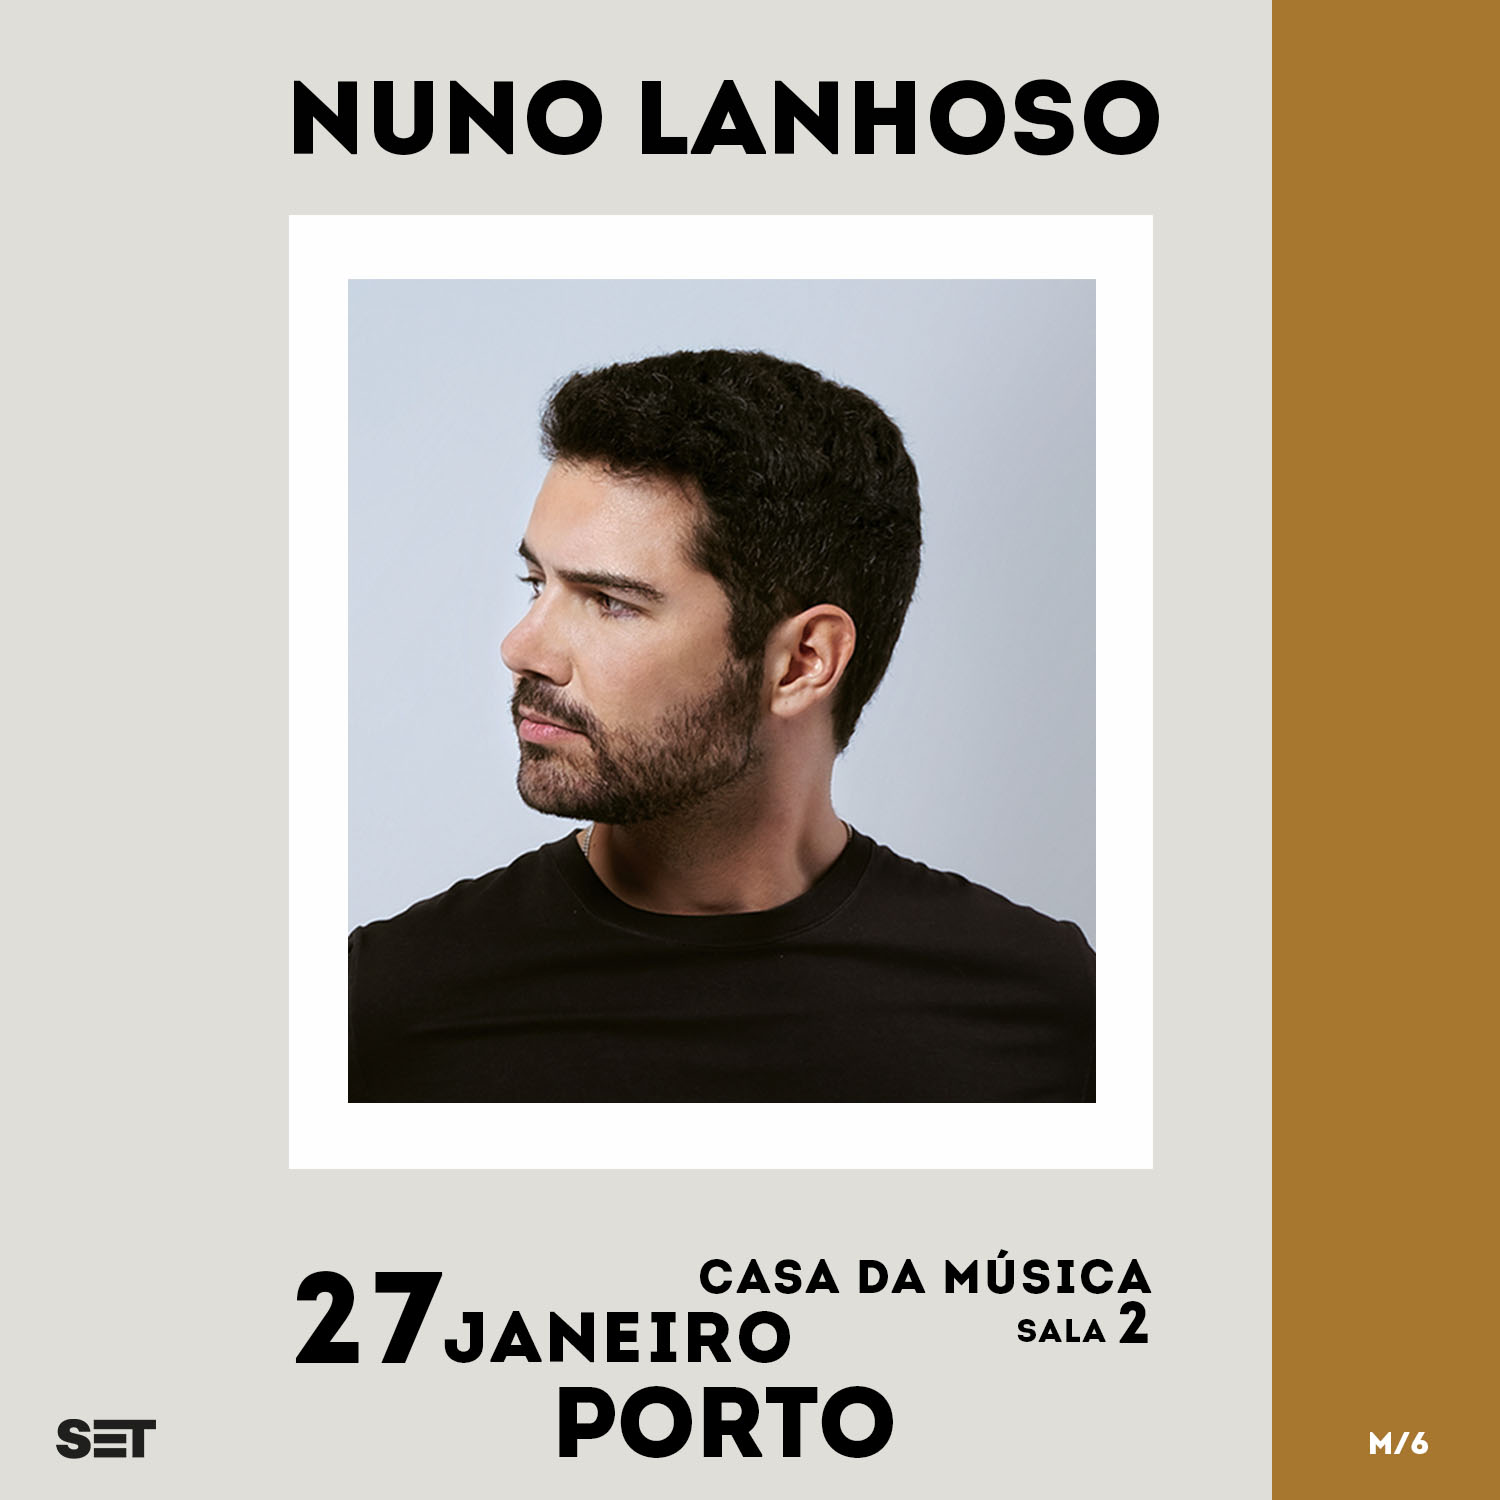 Nuno Lanhoso estreia-se ao vivo na Casa da Música a 27 de Janeiro